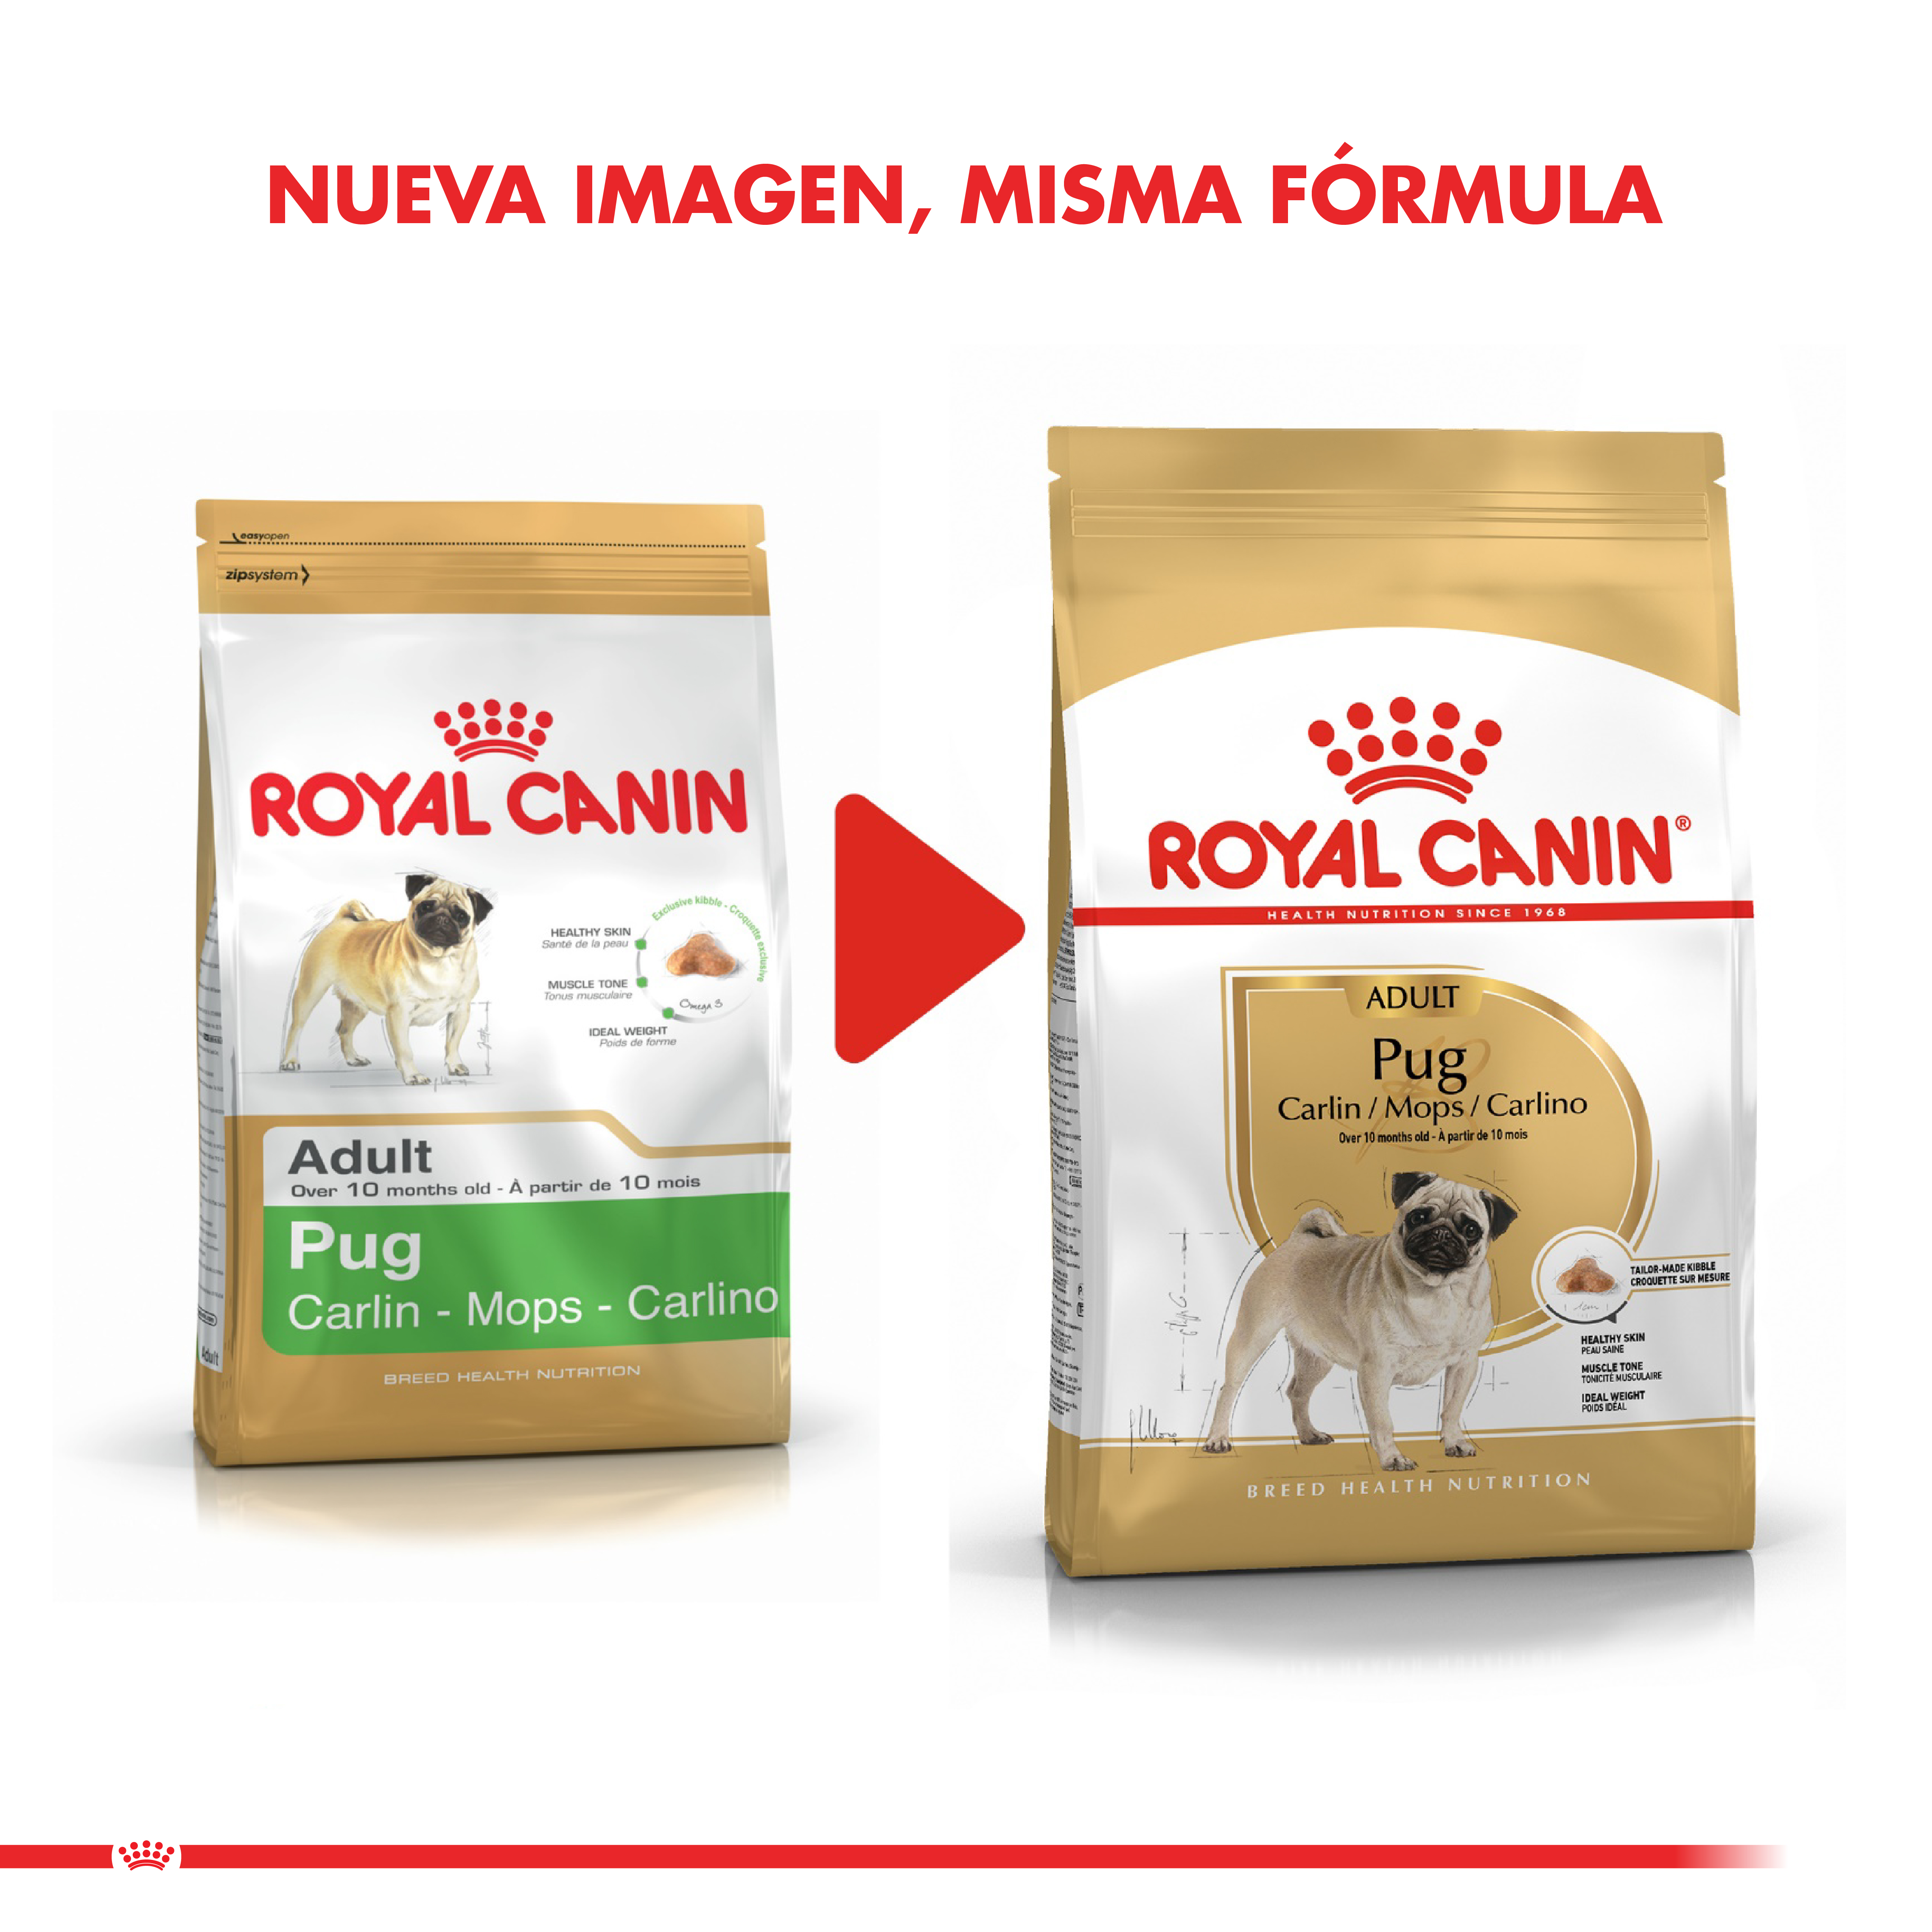 Royal Canin Alimento Seco Pug Adult 2,5 Kg | Bio Pet Shop -Tienda de  Mascotas